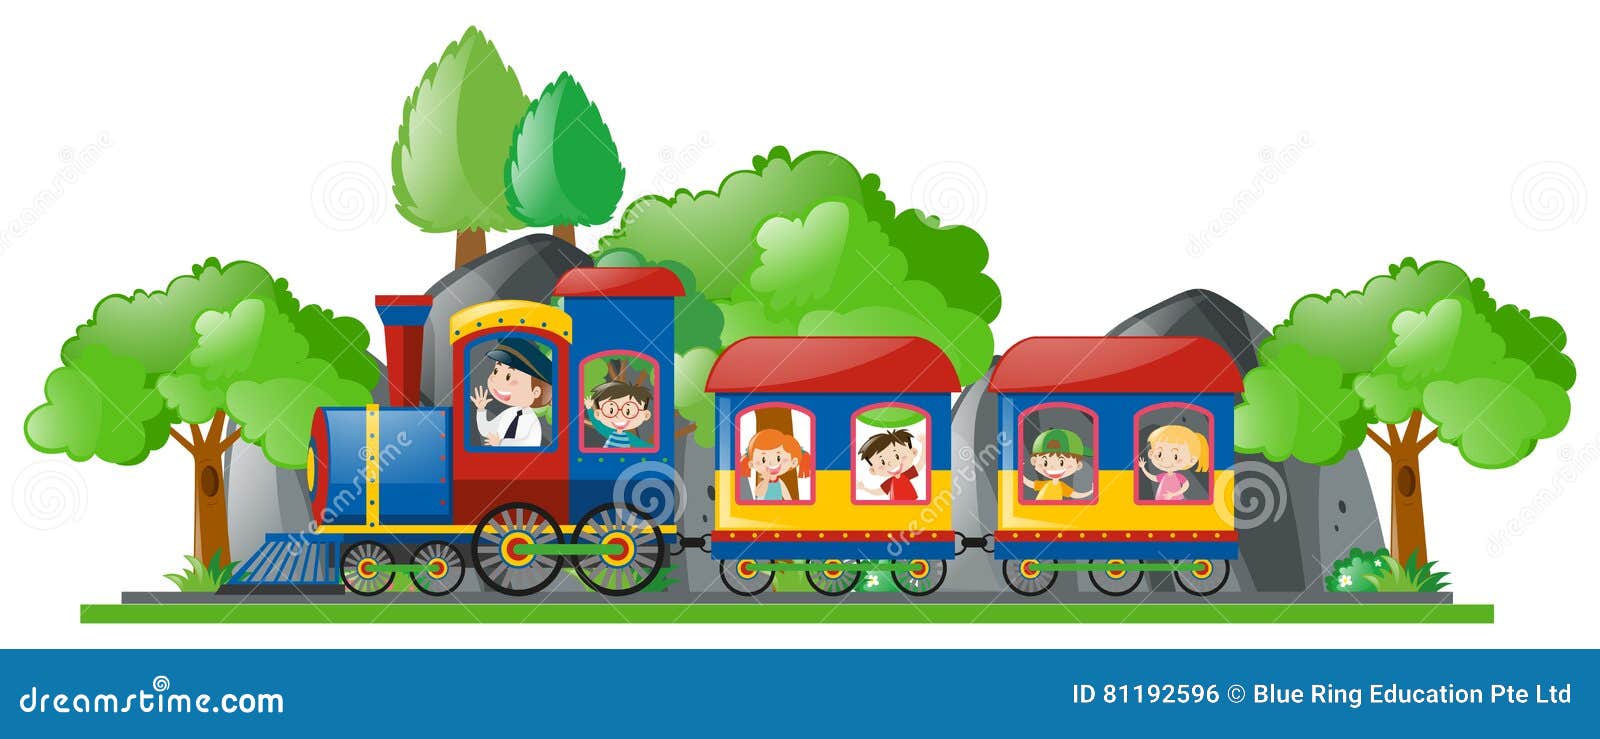 Ребенок едет на поезде с бабушкой. Путешествие с детьми на поезде. Путешествие на поезде рисунок для детей. Поезд едет рисунок для детей. Дети едут в поезде.